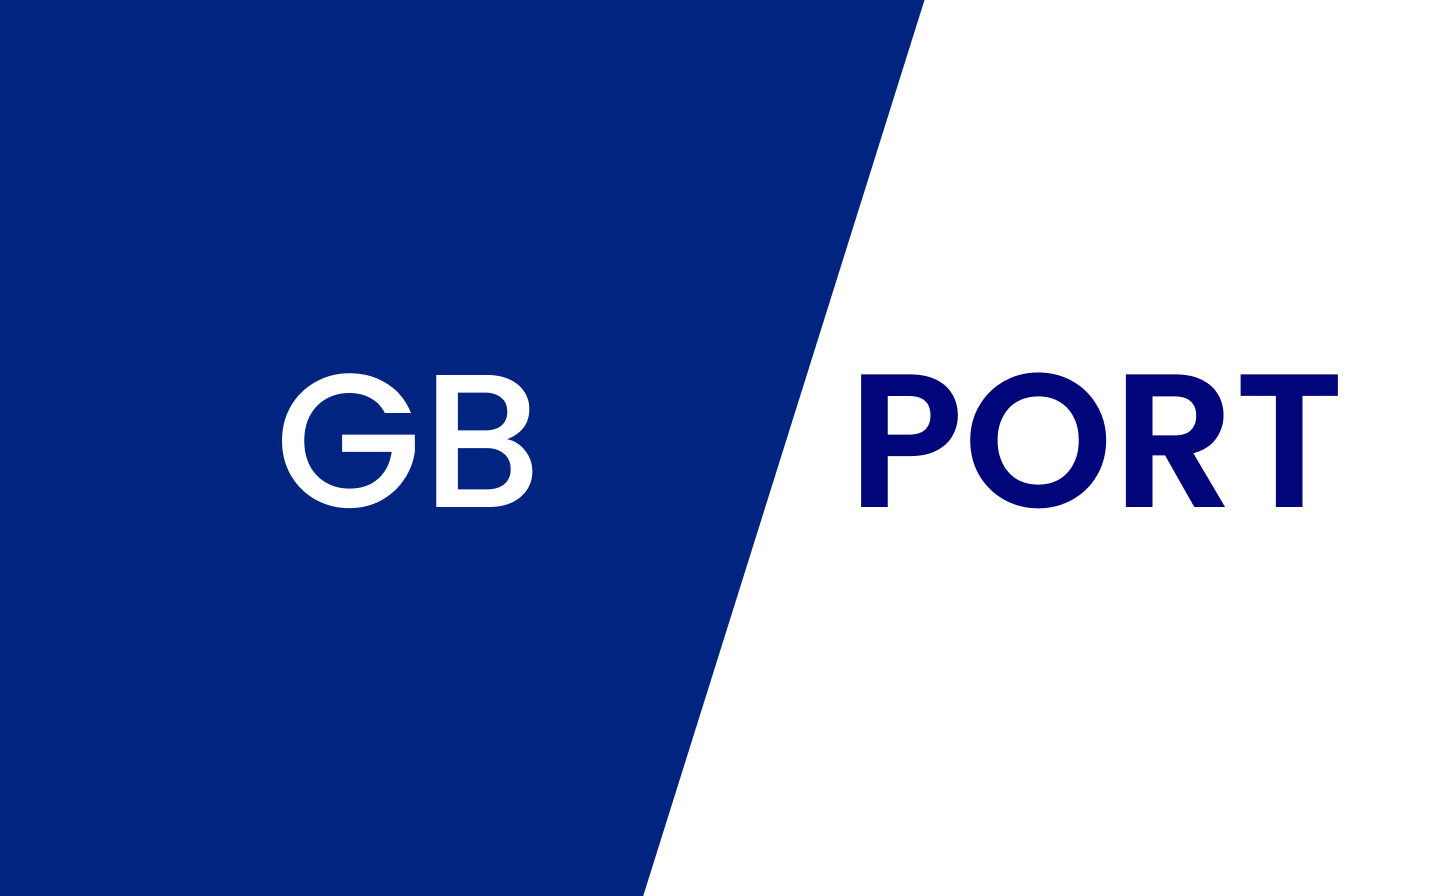 Nên chọn proxy tính phí theo GB hay Port?